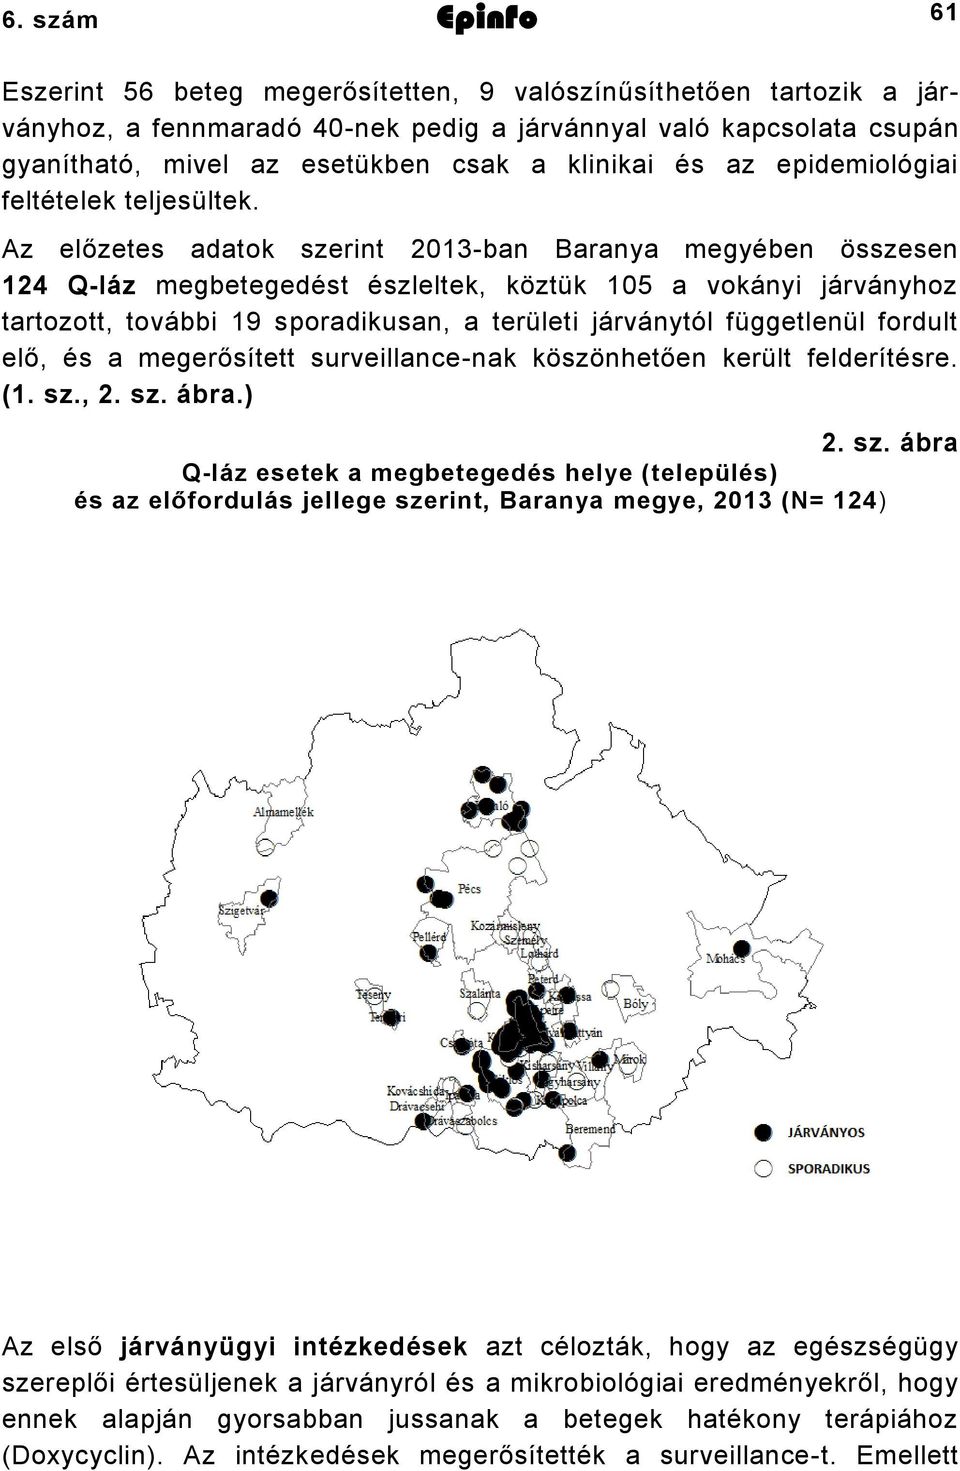 Az előzetes adatok szerint 2013-ban Baranya megyében összesen 124 Q-láz megbetegedést észleltek, köztük 105 a vokányi járványhoz tartozott, további 19 sporadikusan, a területi járványtól függetlenül